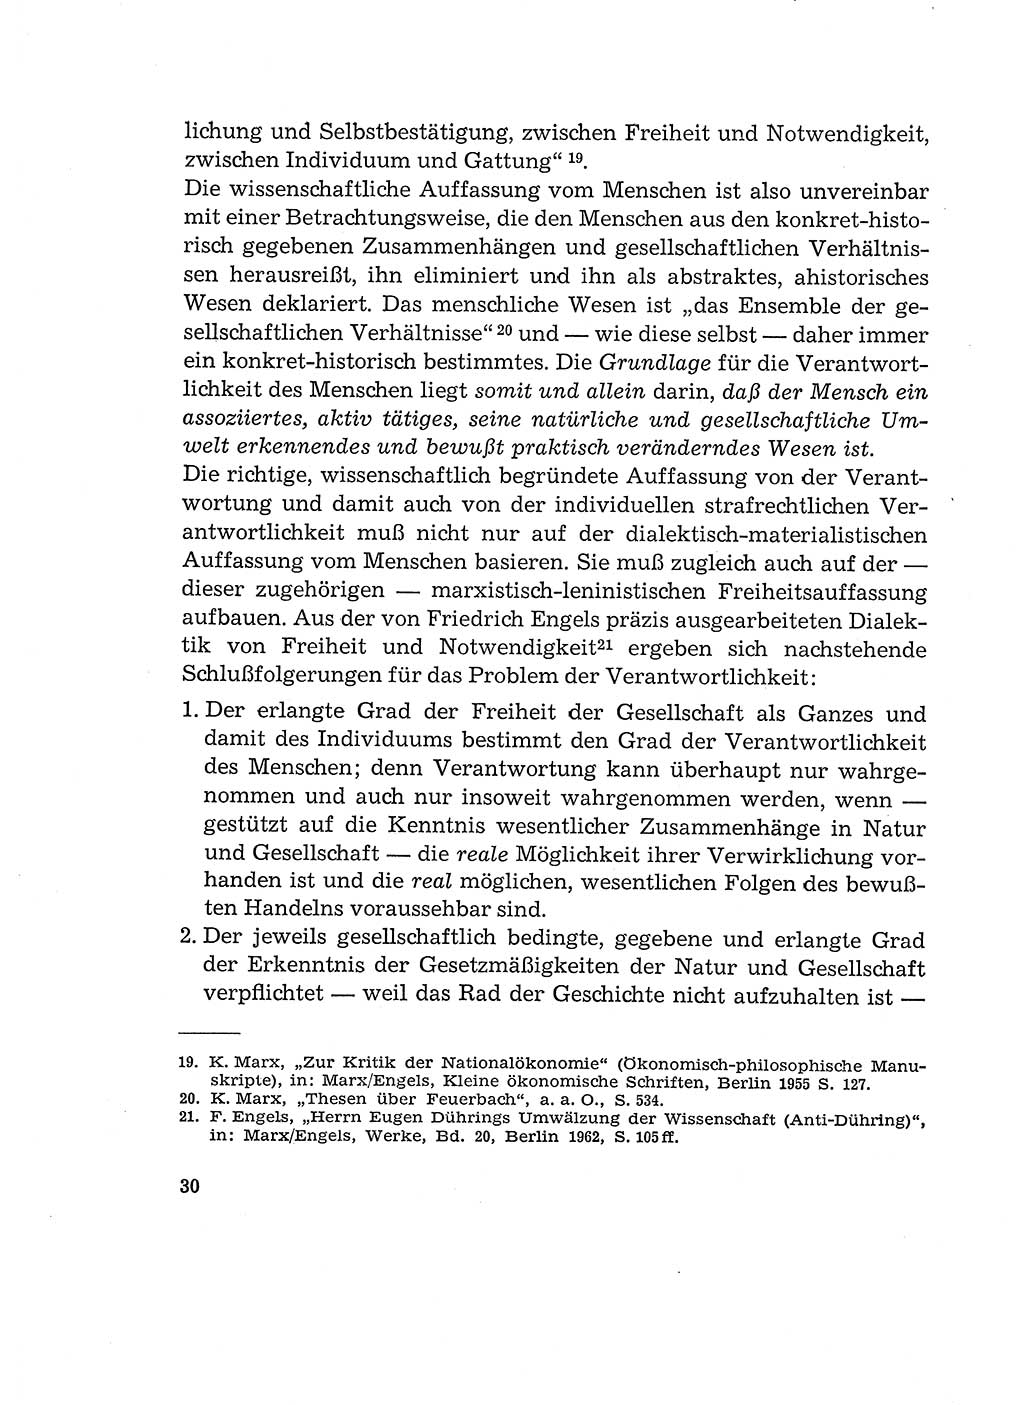 Verantwortung und Schuld im neuen Strafgesetzbuch (StGB) [Deutsche Demokratische Republik (DDR)] 1964, Seite 30 (Verantw. Sch. StGB DDR 1964, S. 30)